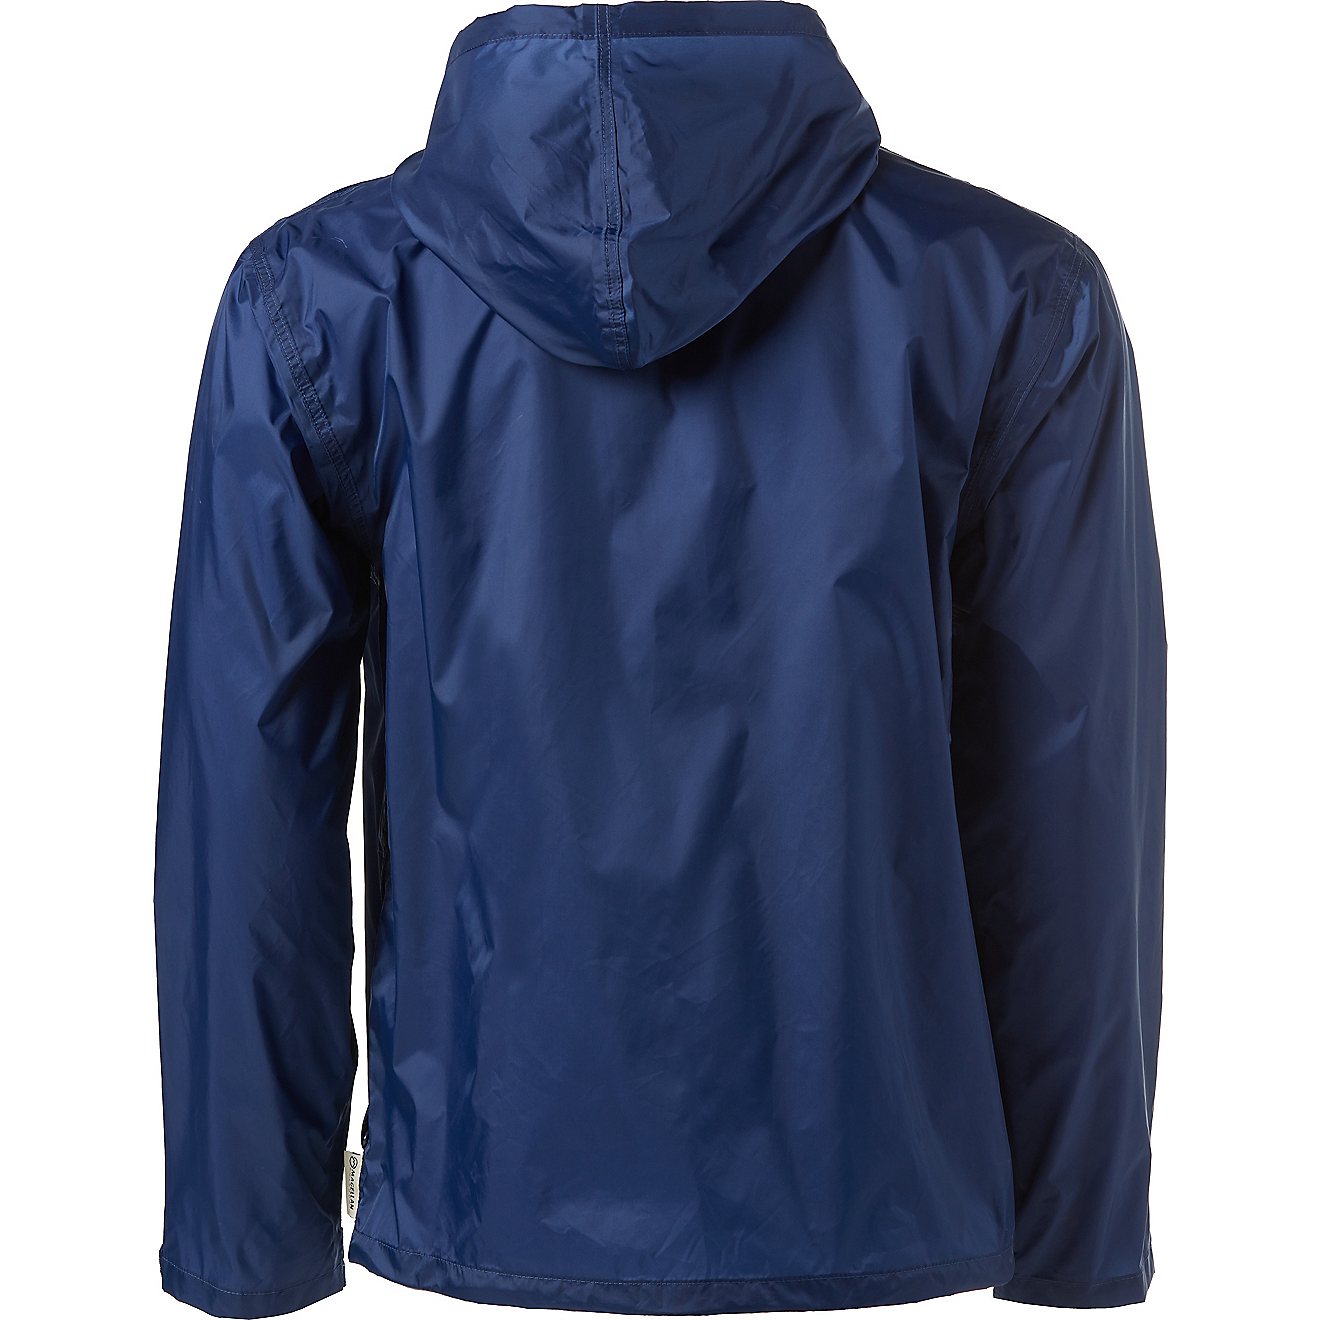 Magellan Outdoors Men's Packable Rain Jacket                                                                                     - view number 2